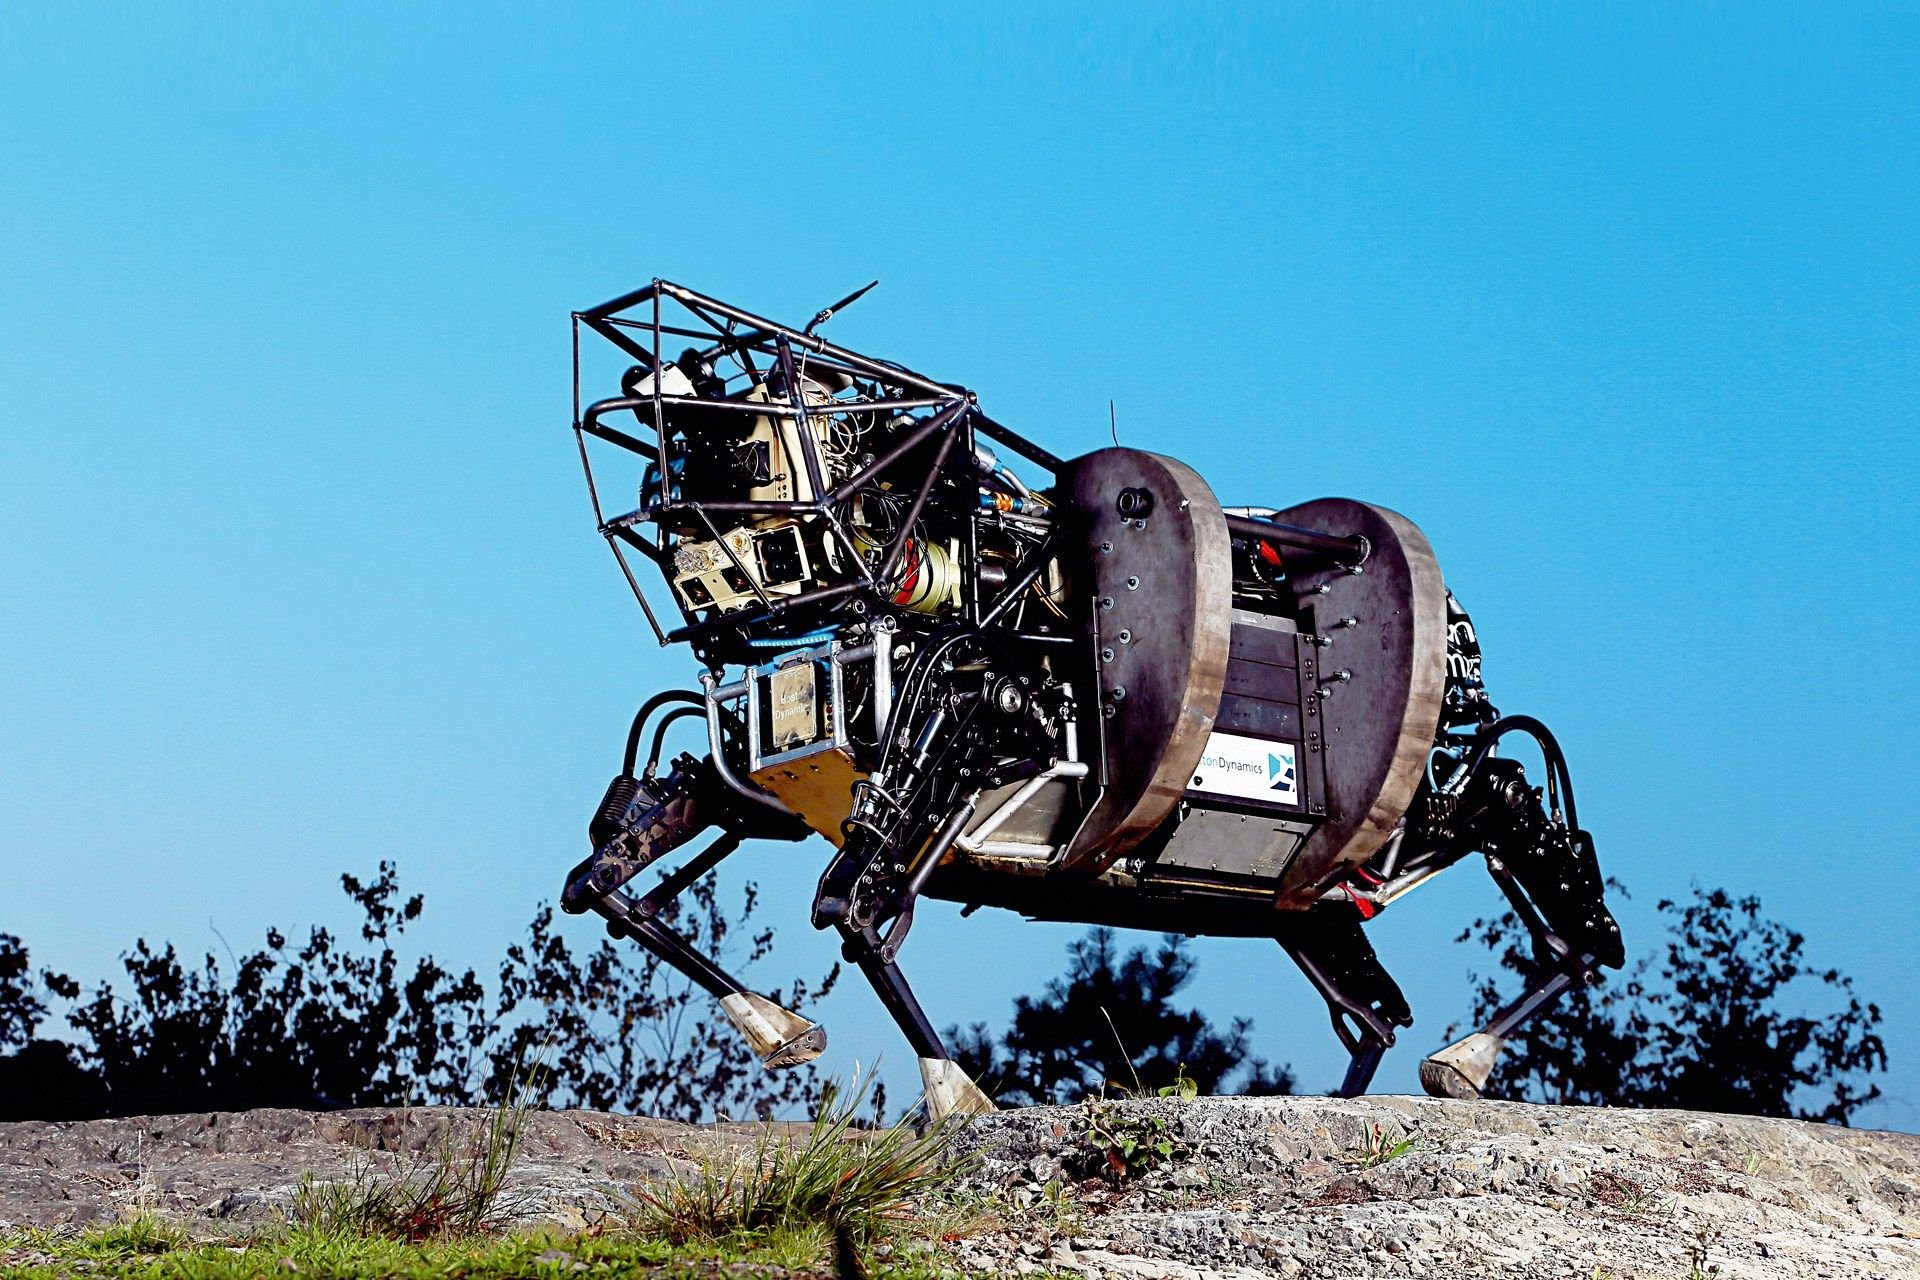 Робот мул Бостон Динамикс. Шагающий робот Бостон Динамикс. Биг дог Бостон Дайнемикс. Boston Dynamics роботы big Dog.